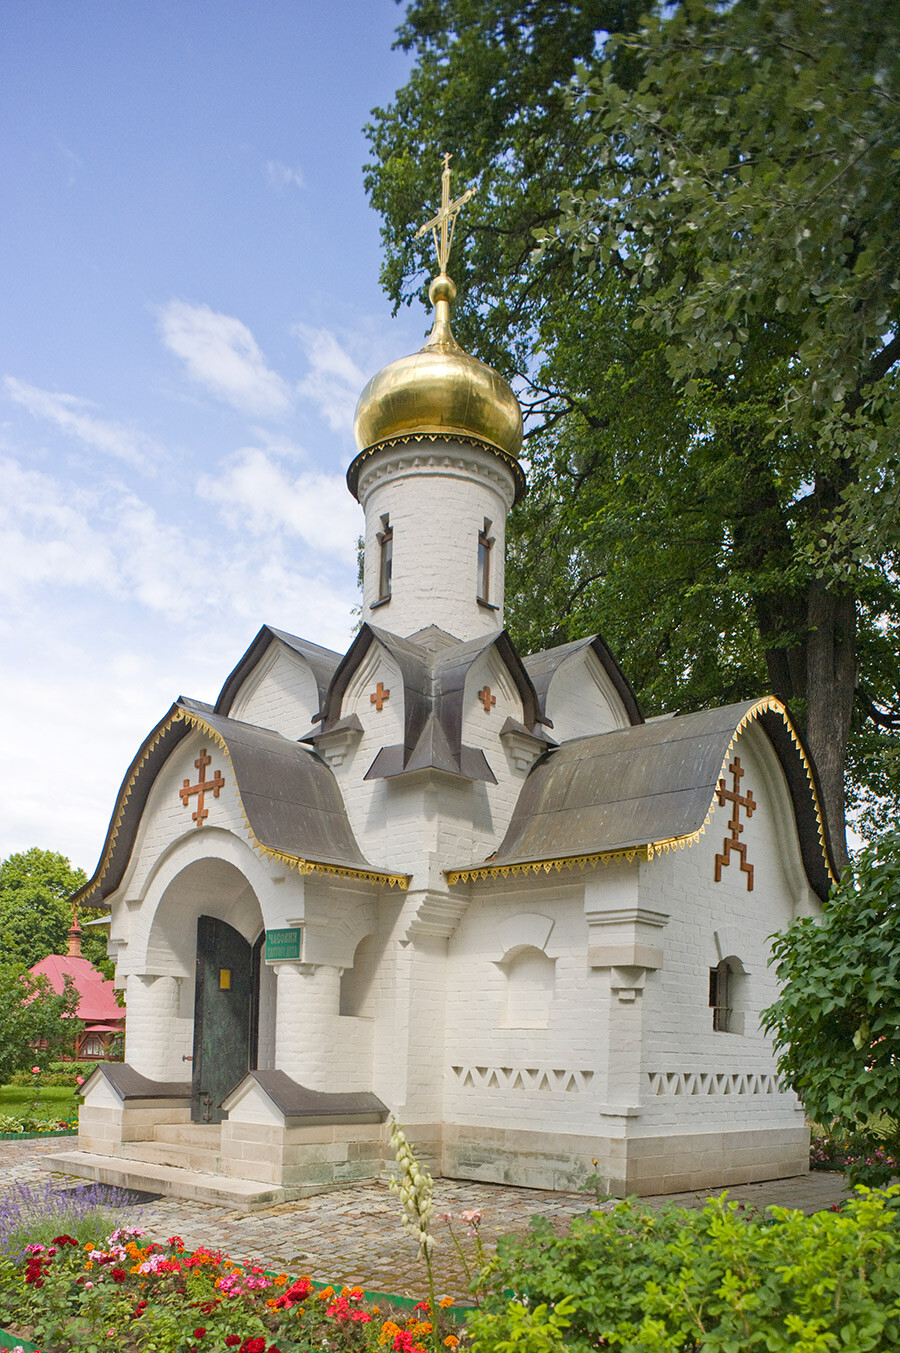 Monastero dei Santi Boris e Gleb, Cappella della Discesa dello Spirito Santo. Un bell’esempio di stile neo-russo, costruito nel 2004 come monumento agli 850 anni di Dmitrov. Vista sud-ovest. 18 luglio 2015